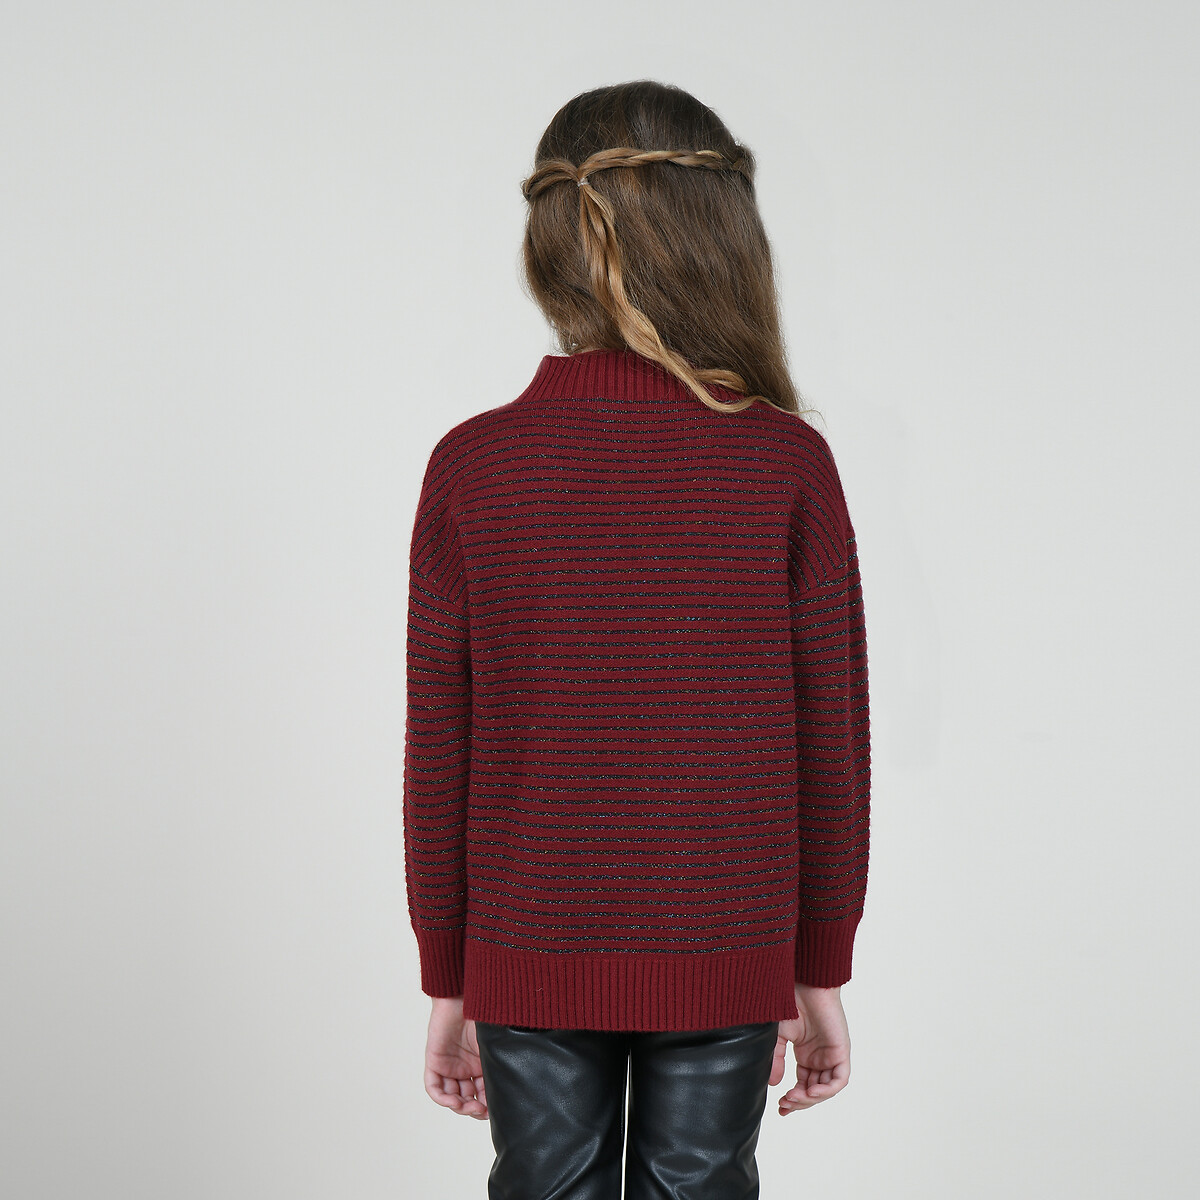 Пуловер La Redoute 4-14 лет 12/14 лет - 150/156 см красный, размер 12/14 лет - 150/156 см 4-14 лет 12/14 лет - 150/156 см красный - фото 2